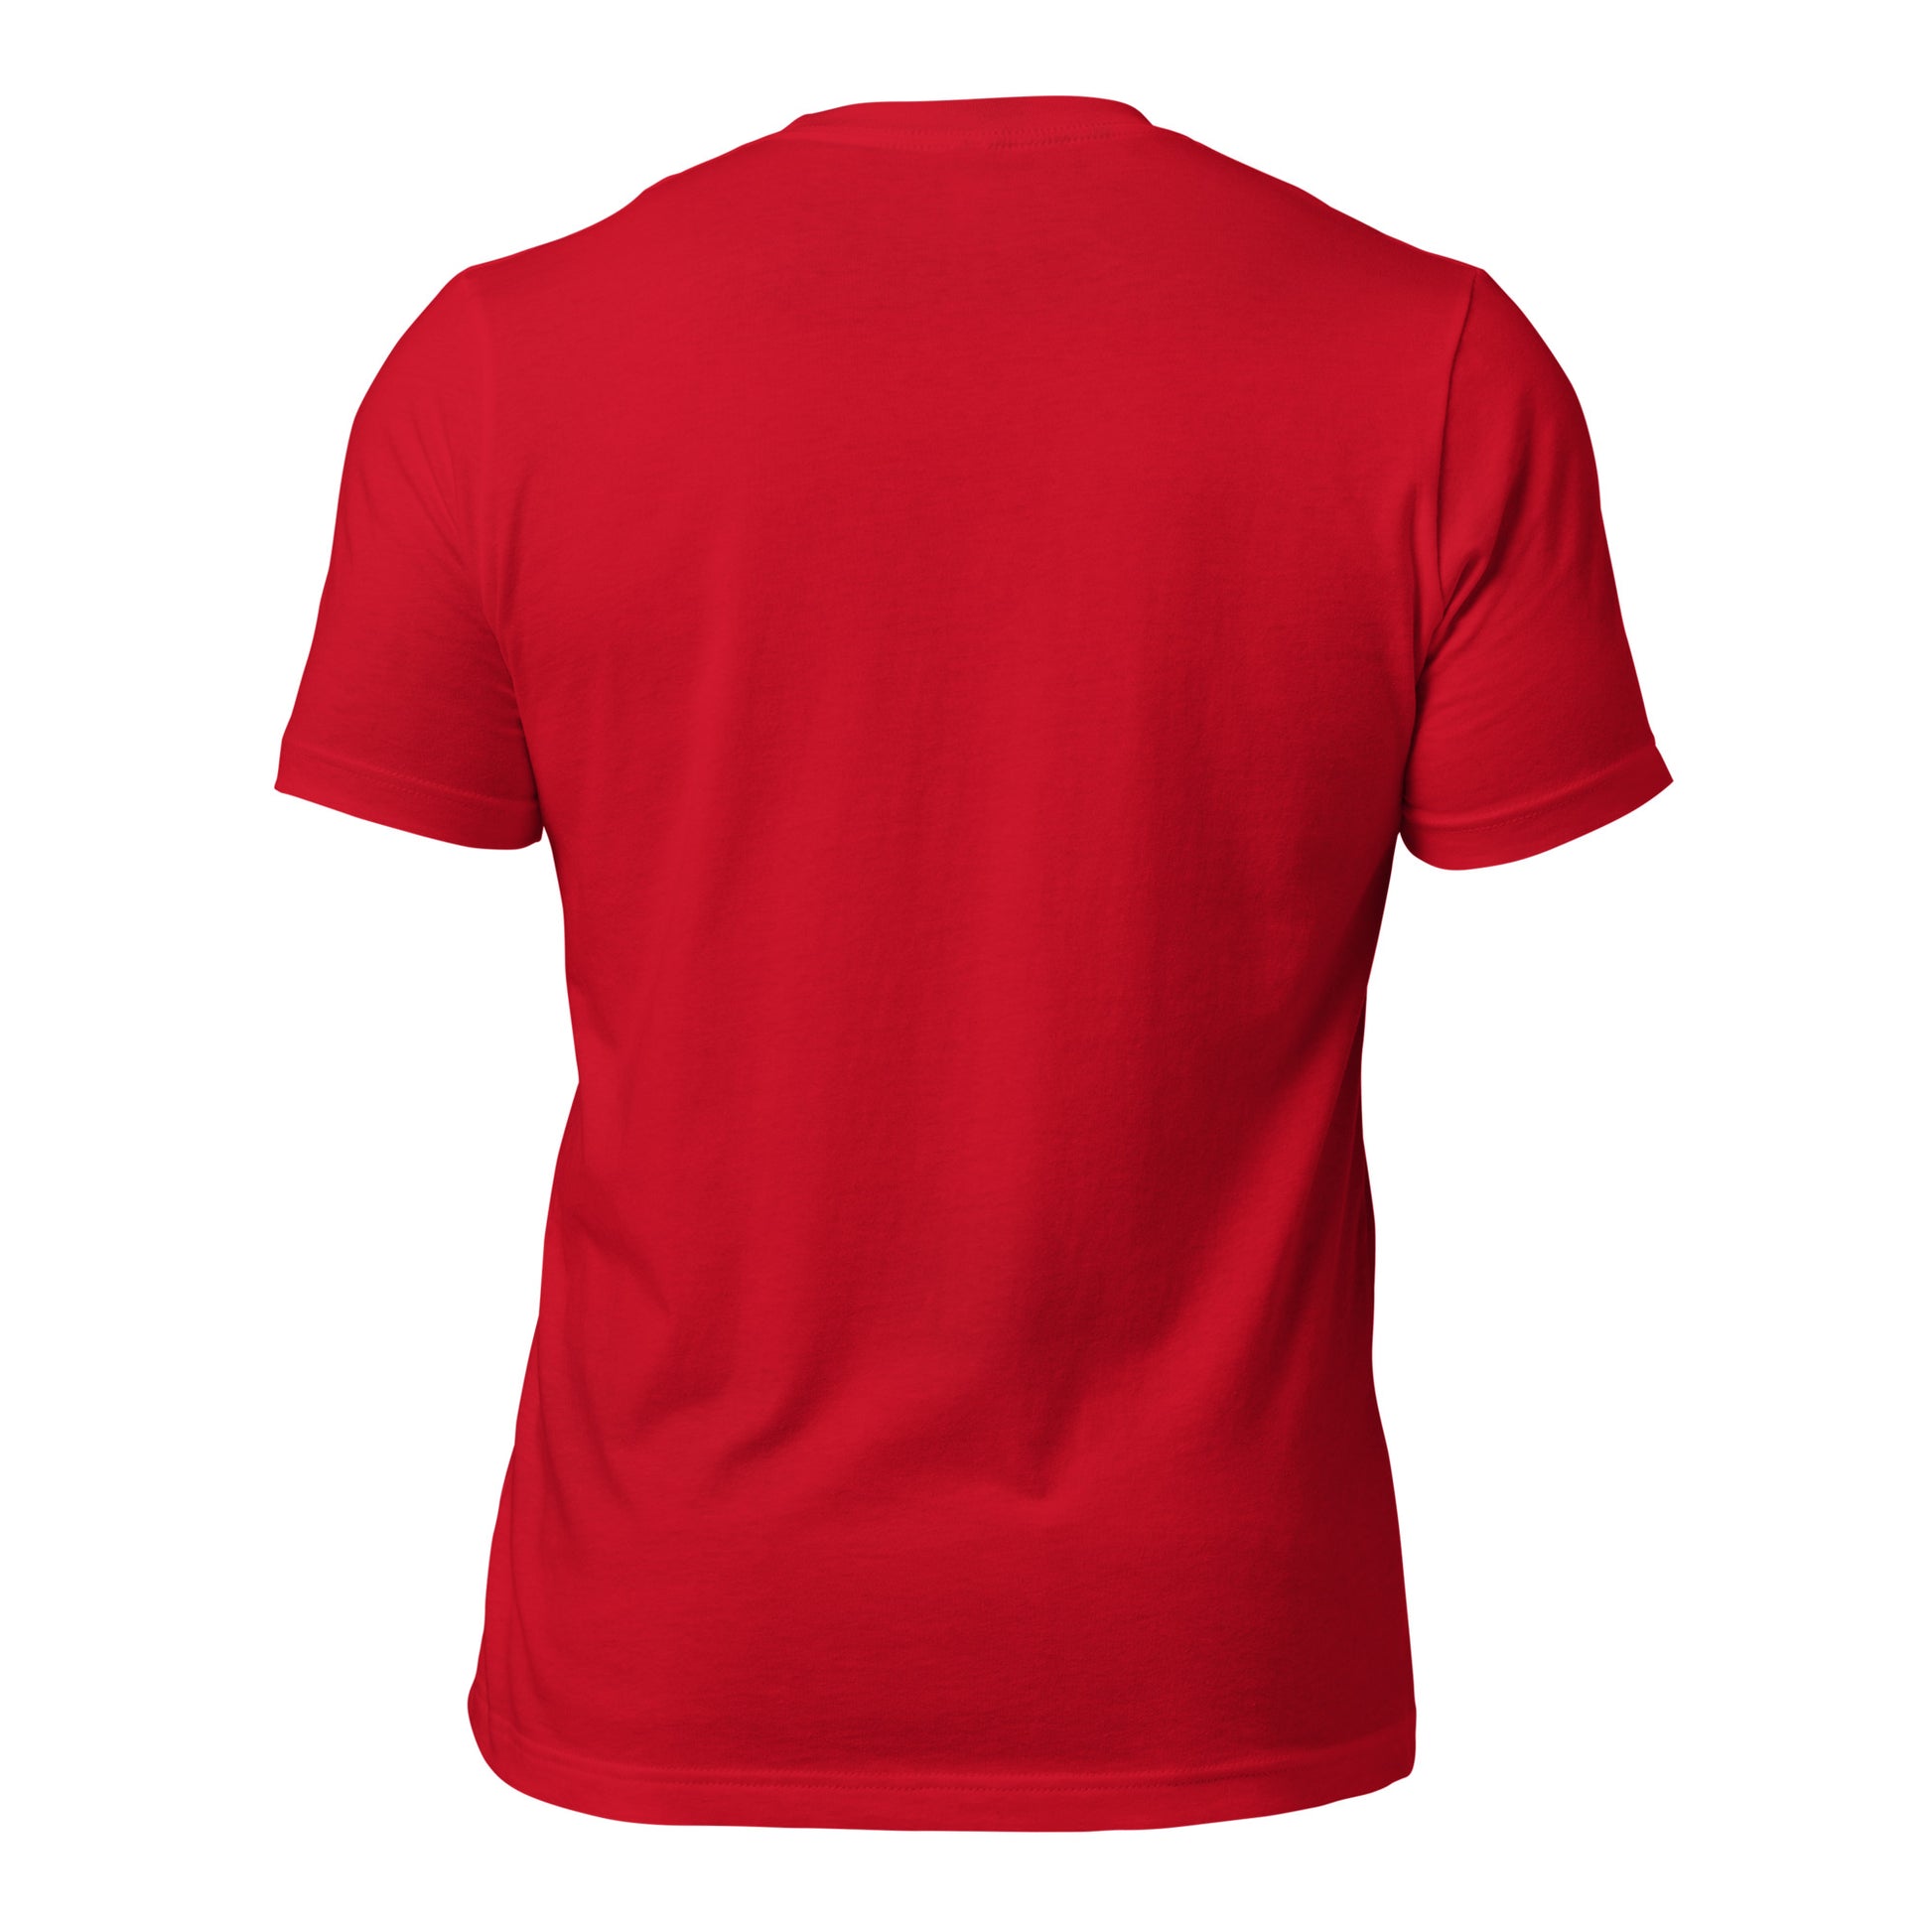 Another Bodega Unisex t-shirt - Another Bodega